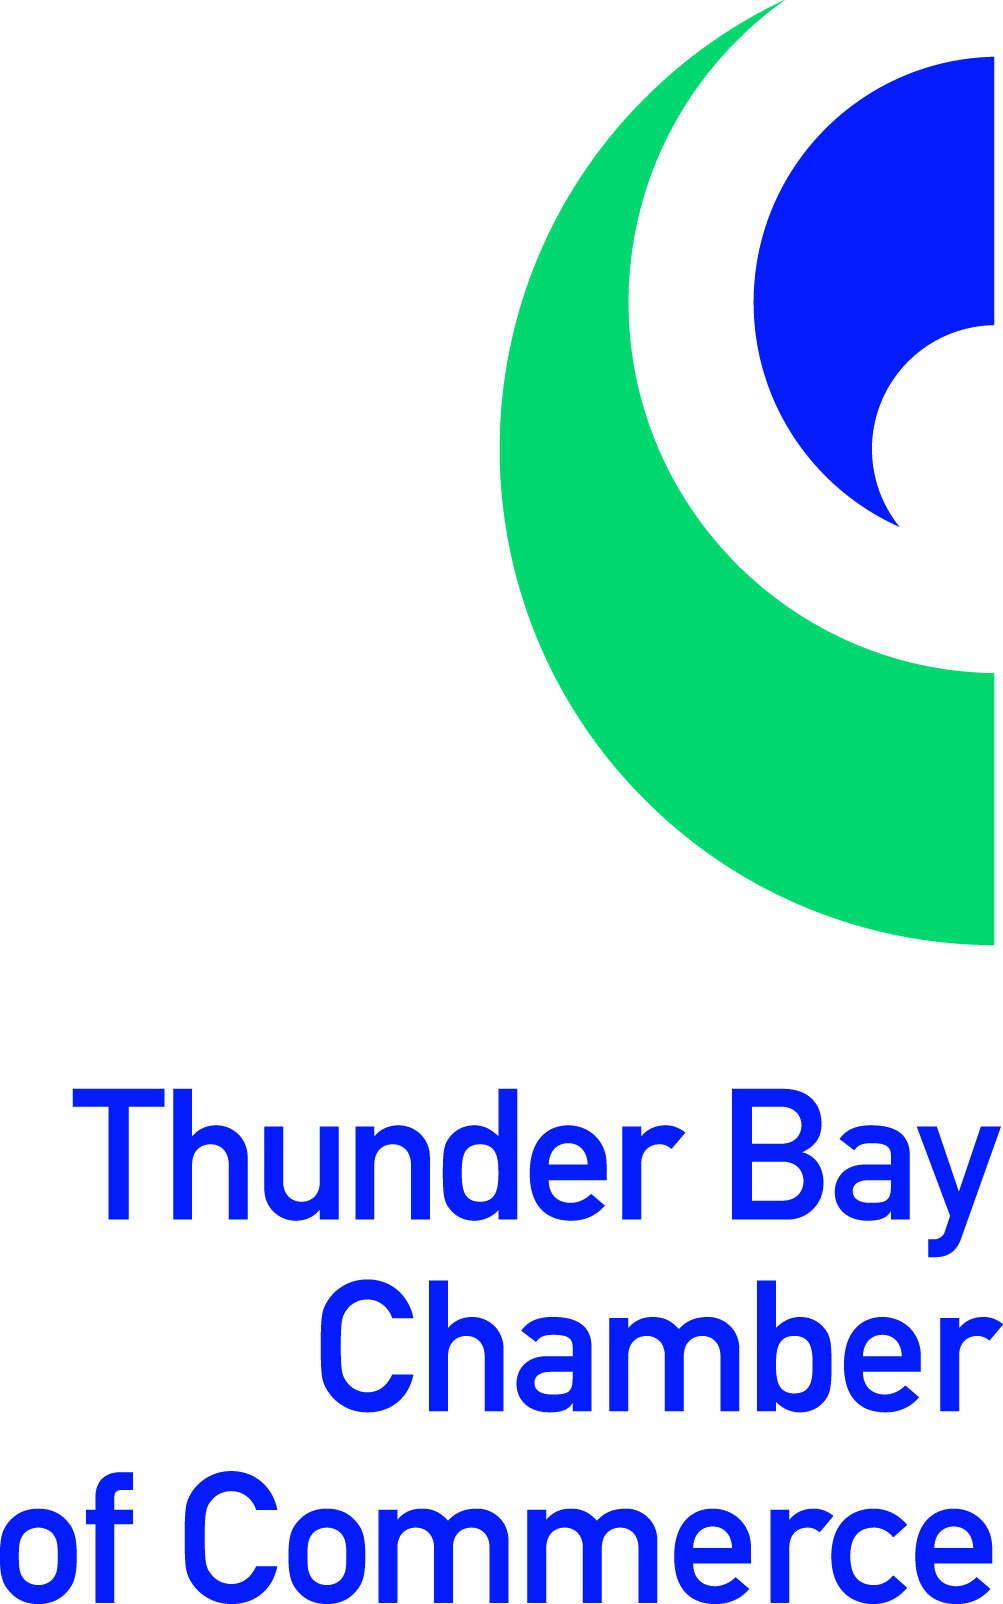 Thunder Bay Chamber of Commerce logo